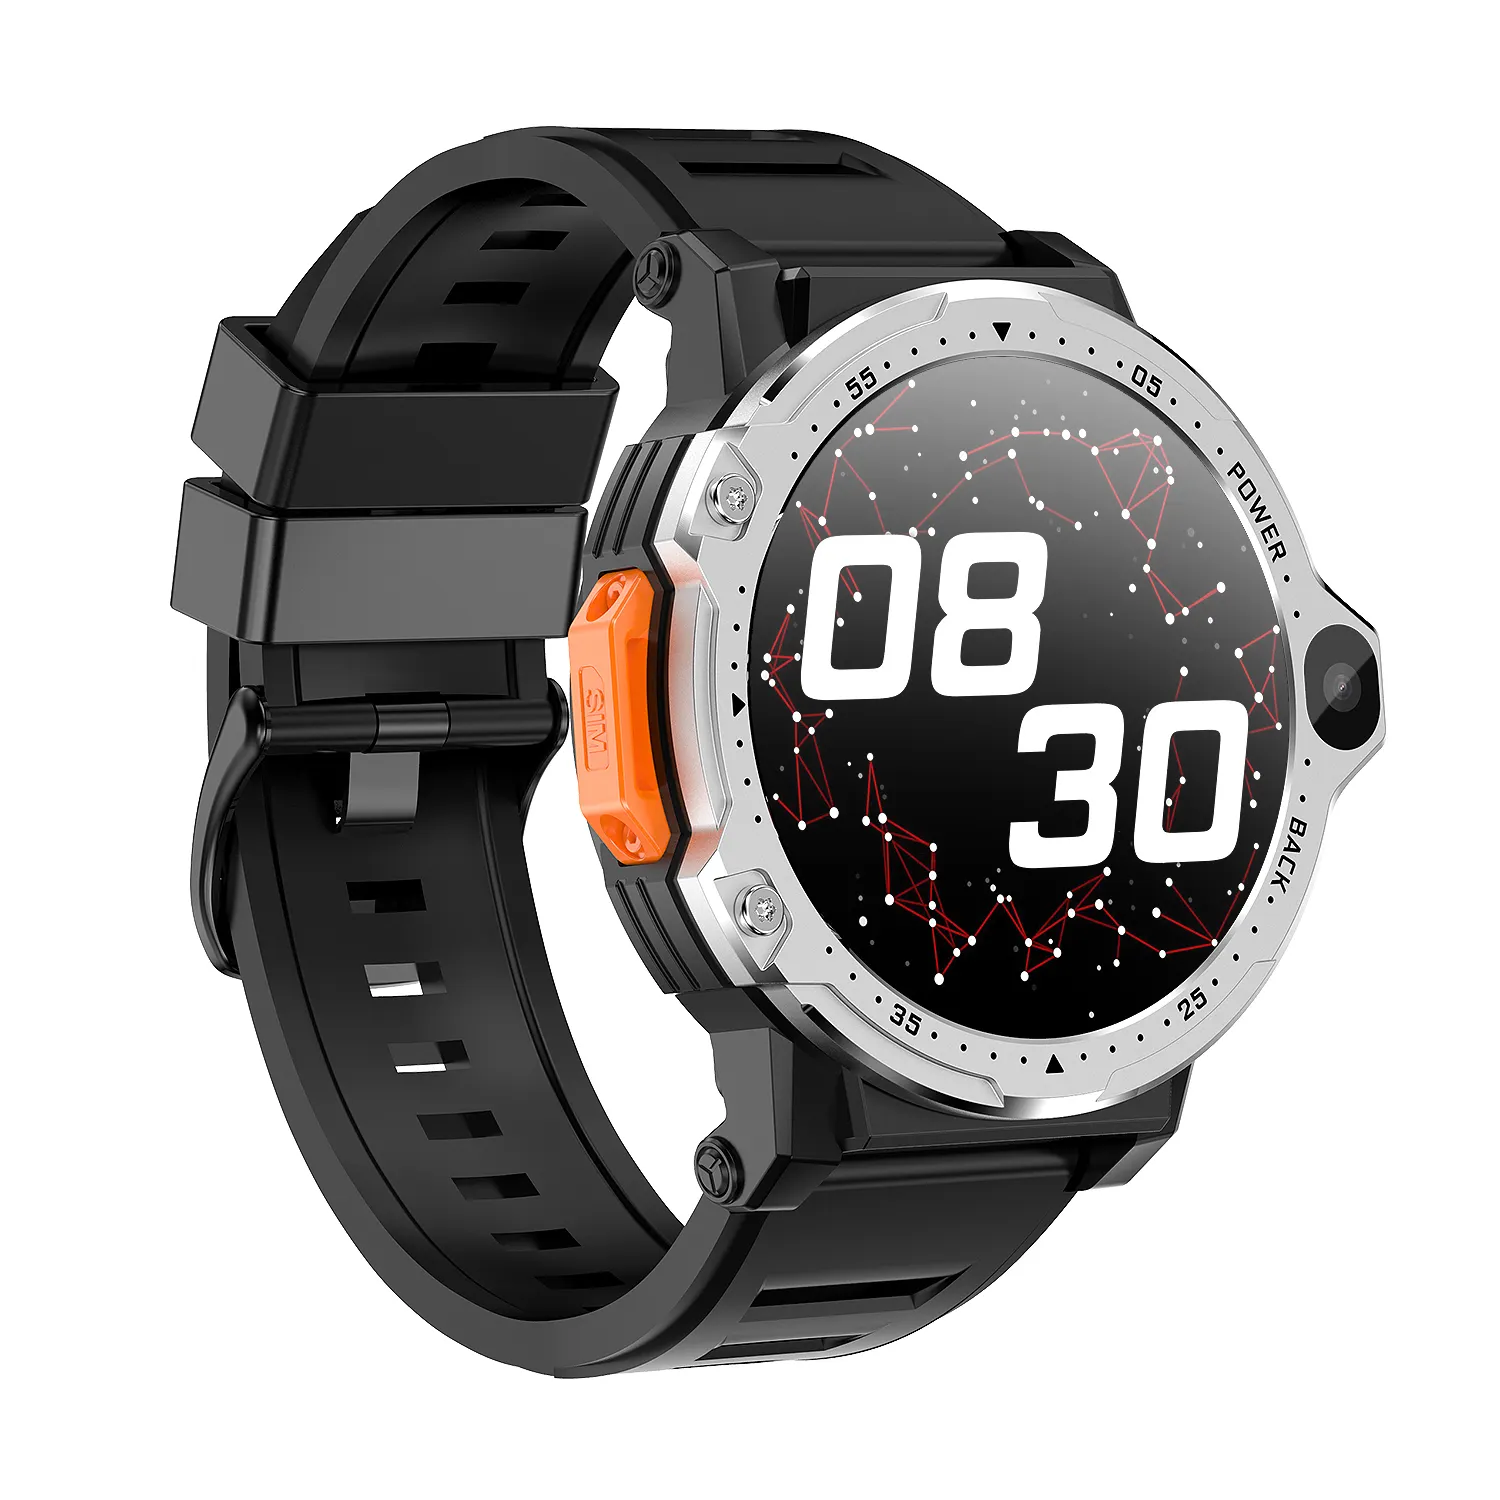 Смарт-часы 4G, 4G, Android, телефон, вызов, 4 + 64G, длительный срок службы батареи, фитнес-трекер, умные часы